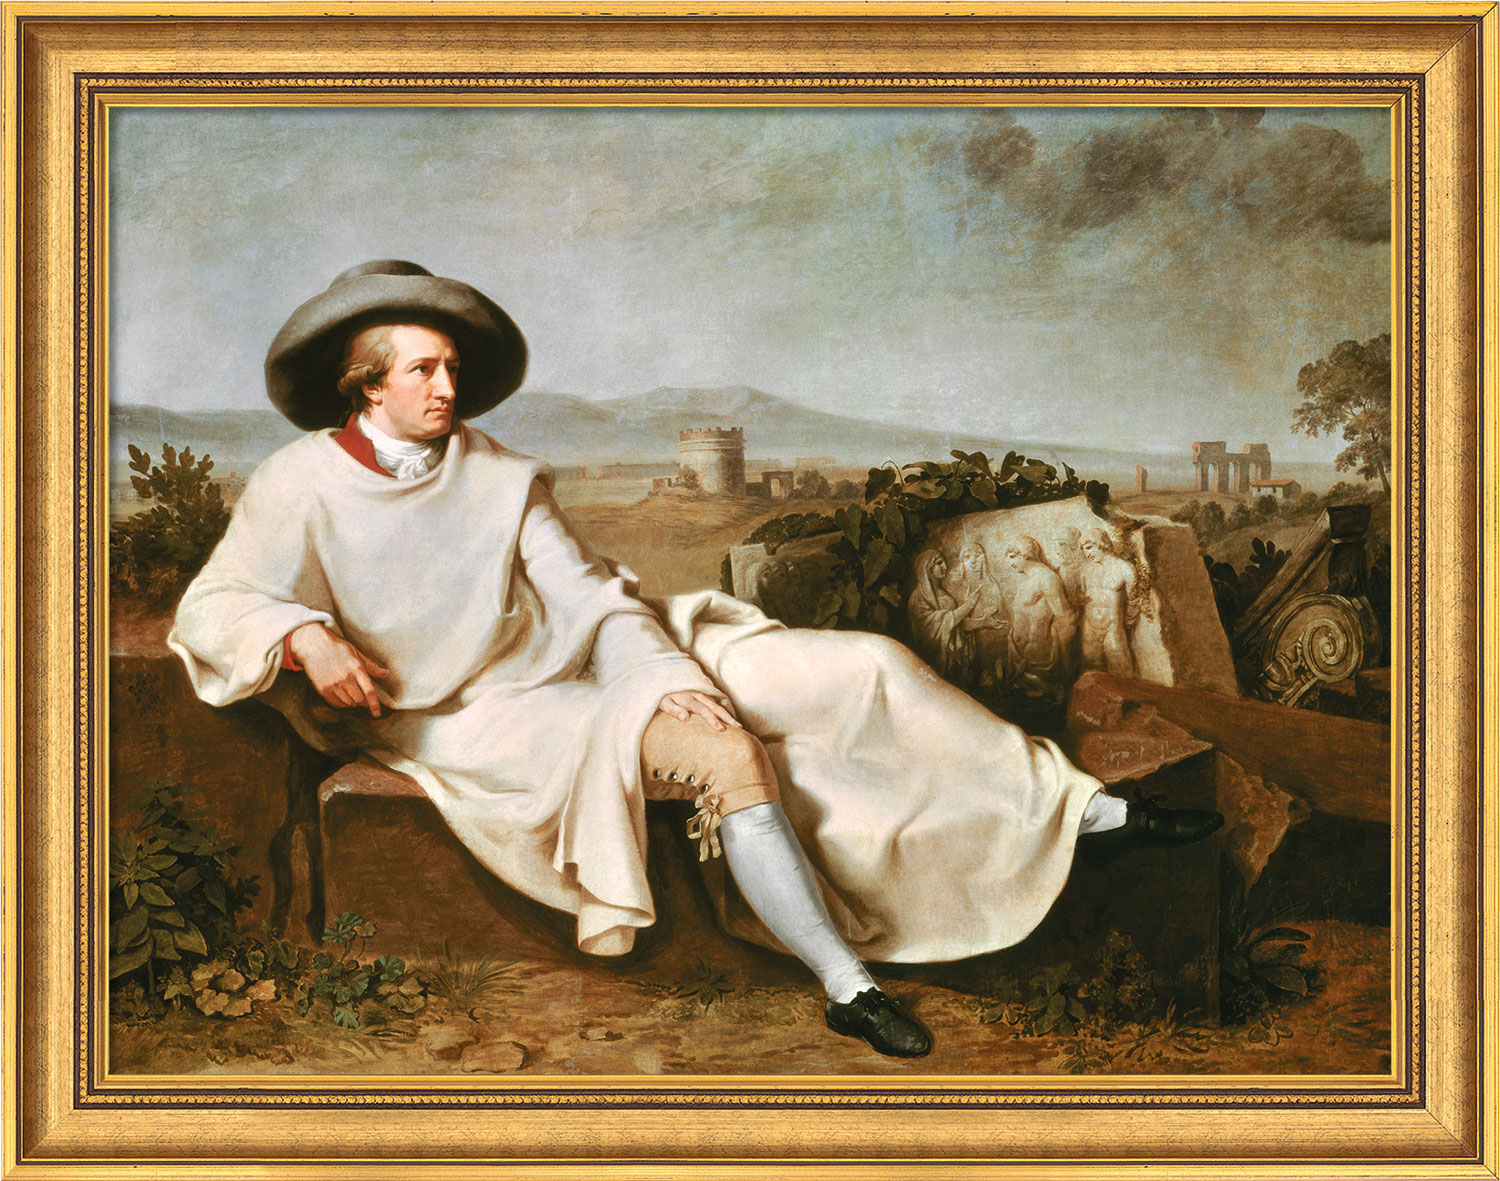 Johann Heinrich Wilhelm Tischbein: Bild 'Goethe in der Campagna' (1786/87), gerahmt